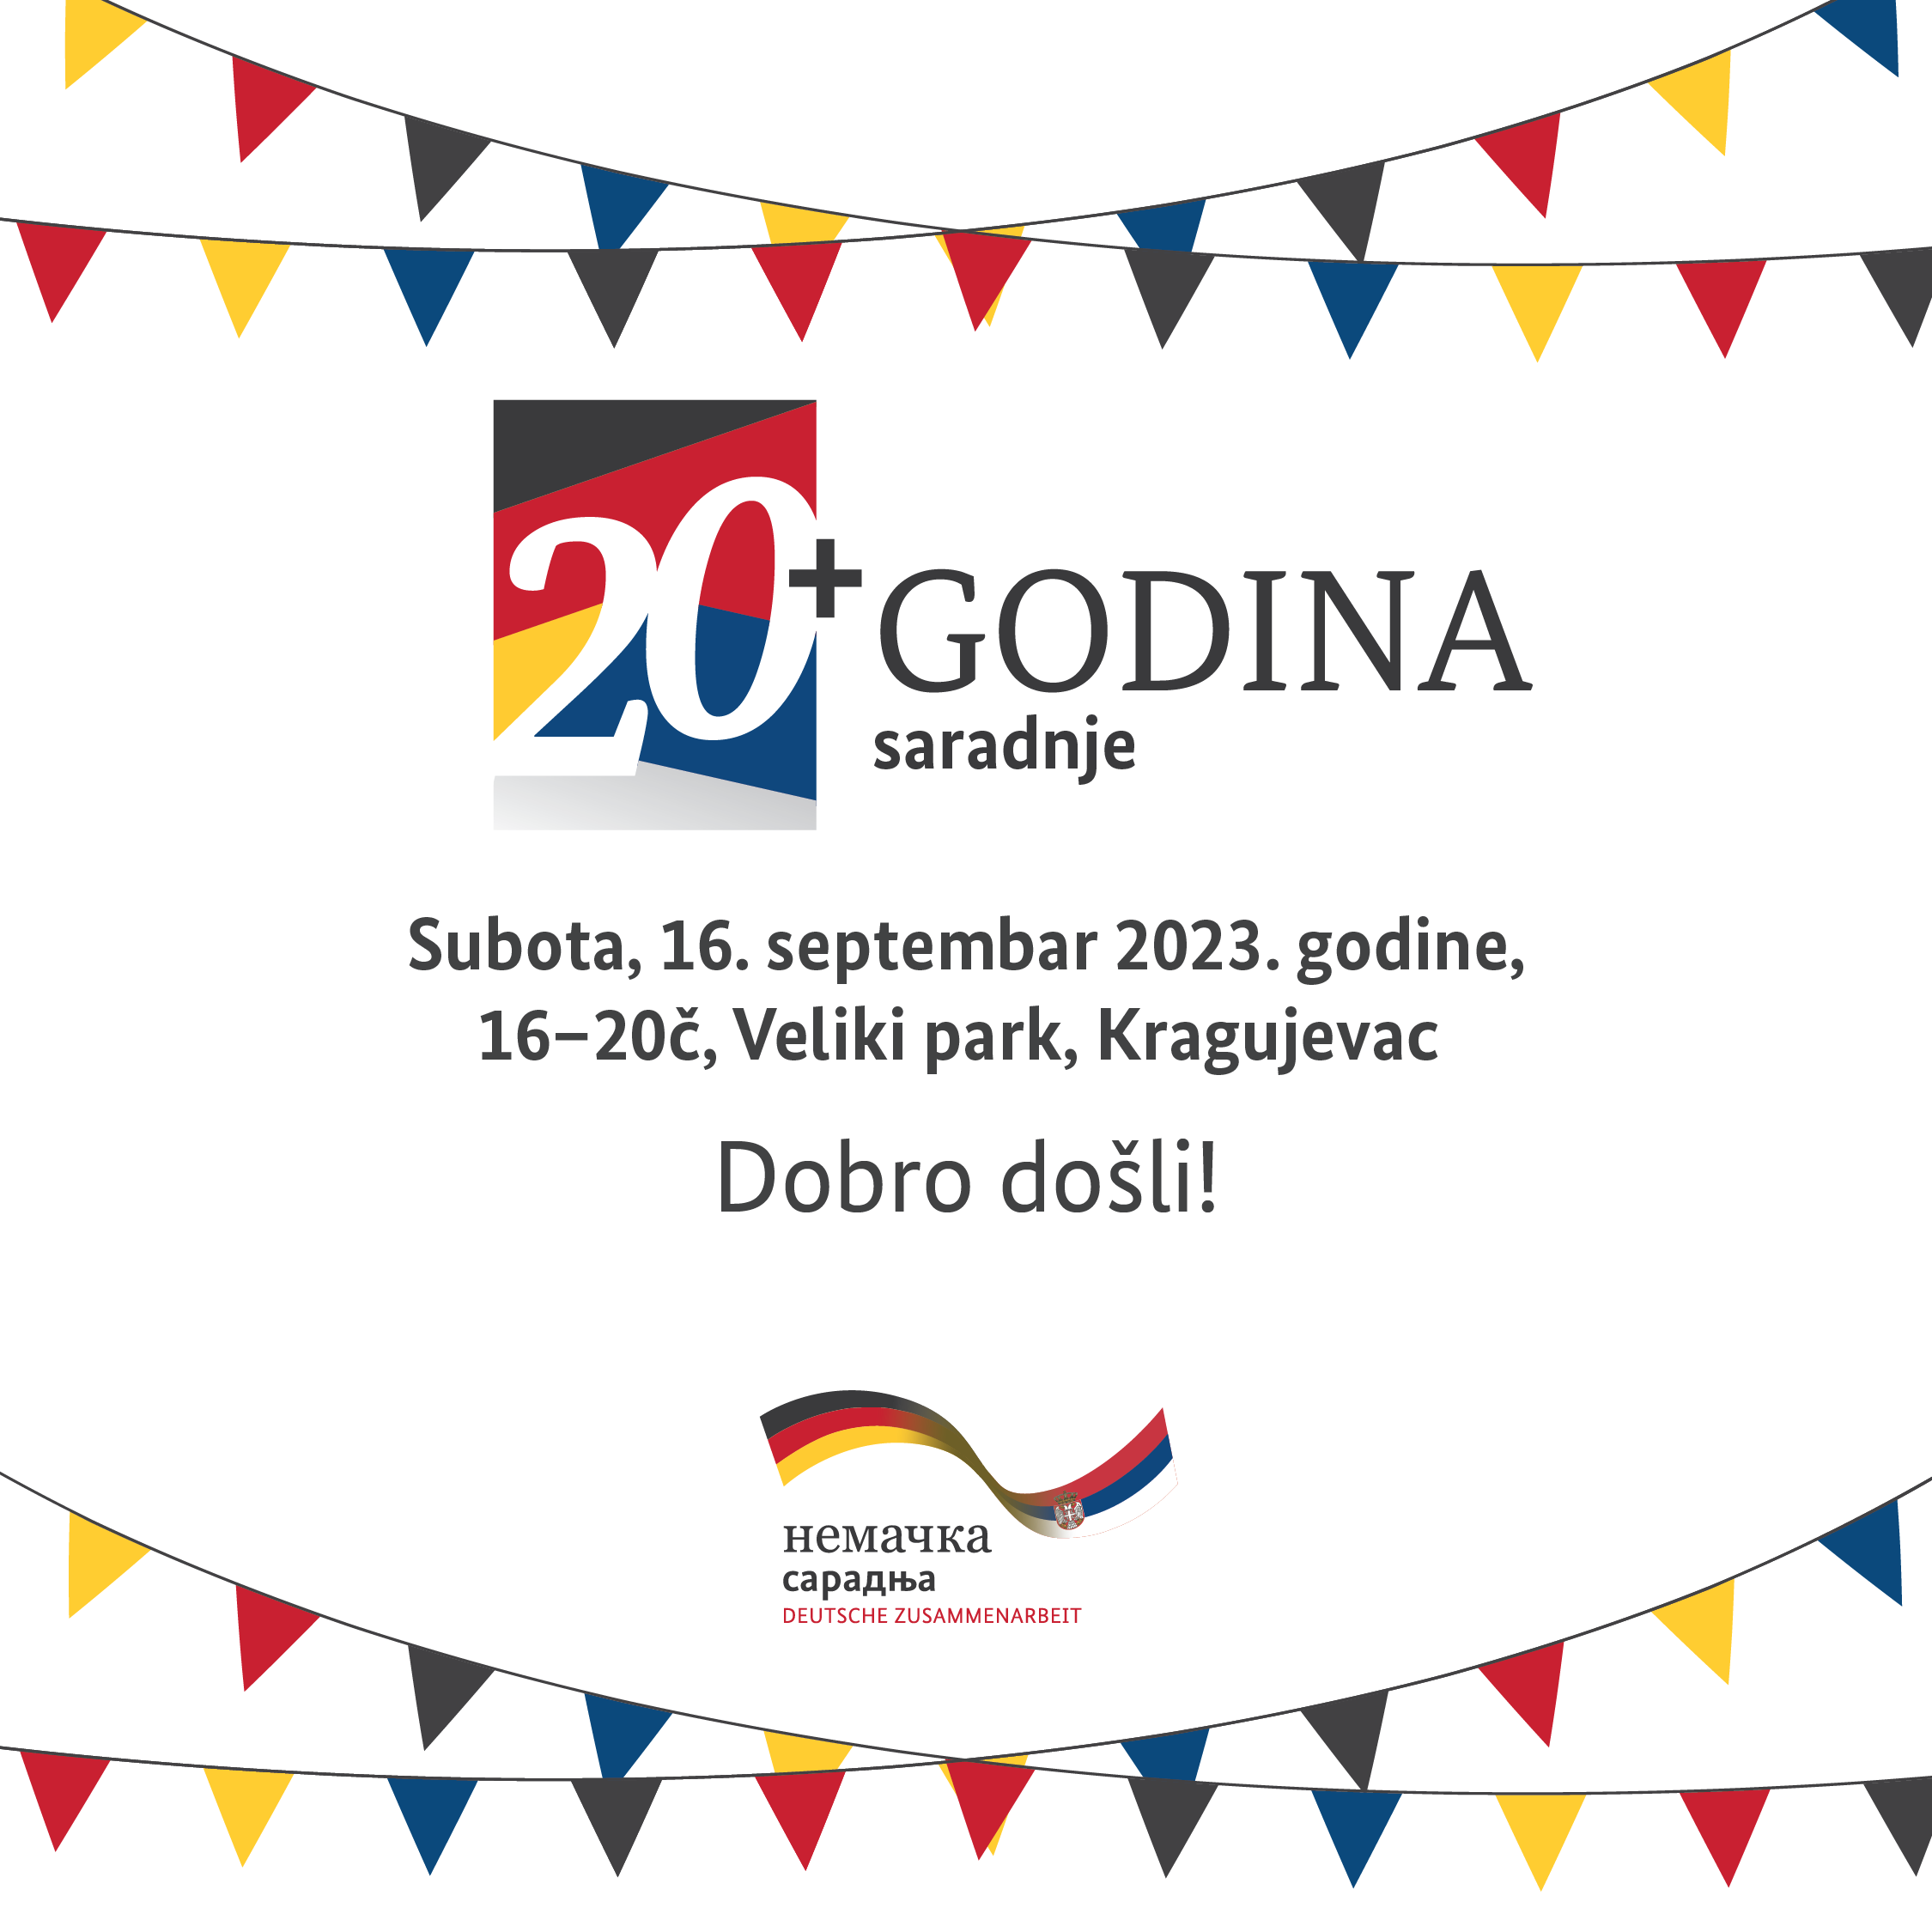 Oбележавања 20+ година Немачке развојне сарадње у Србији